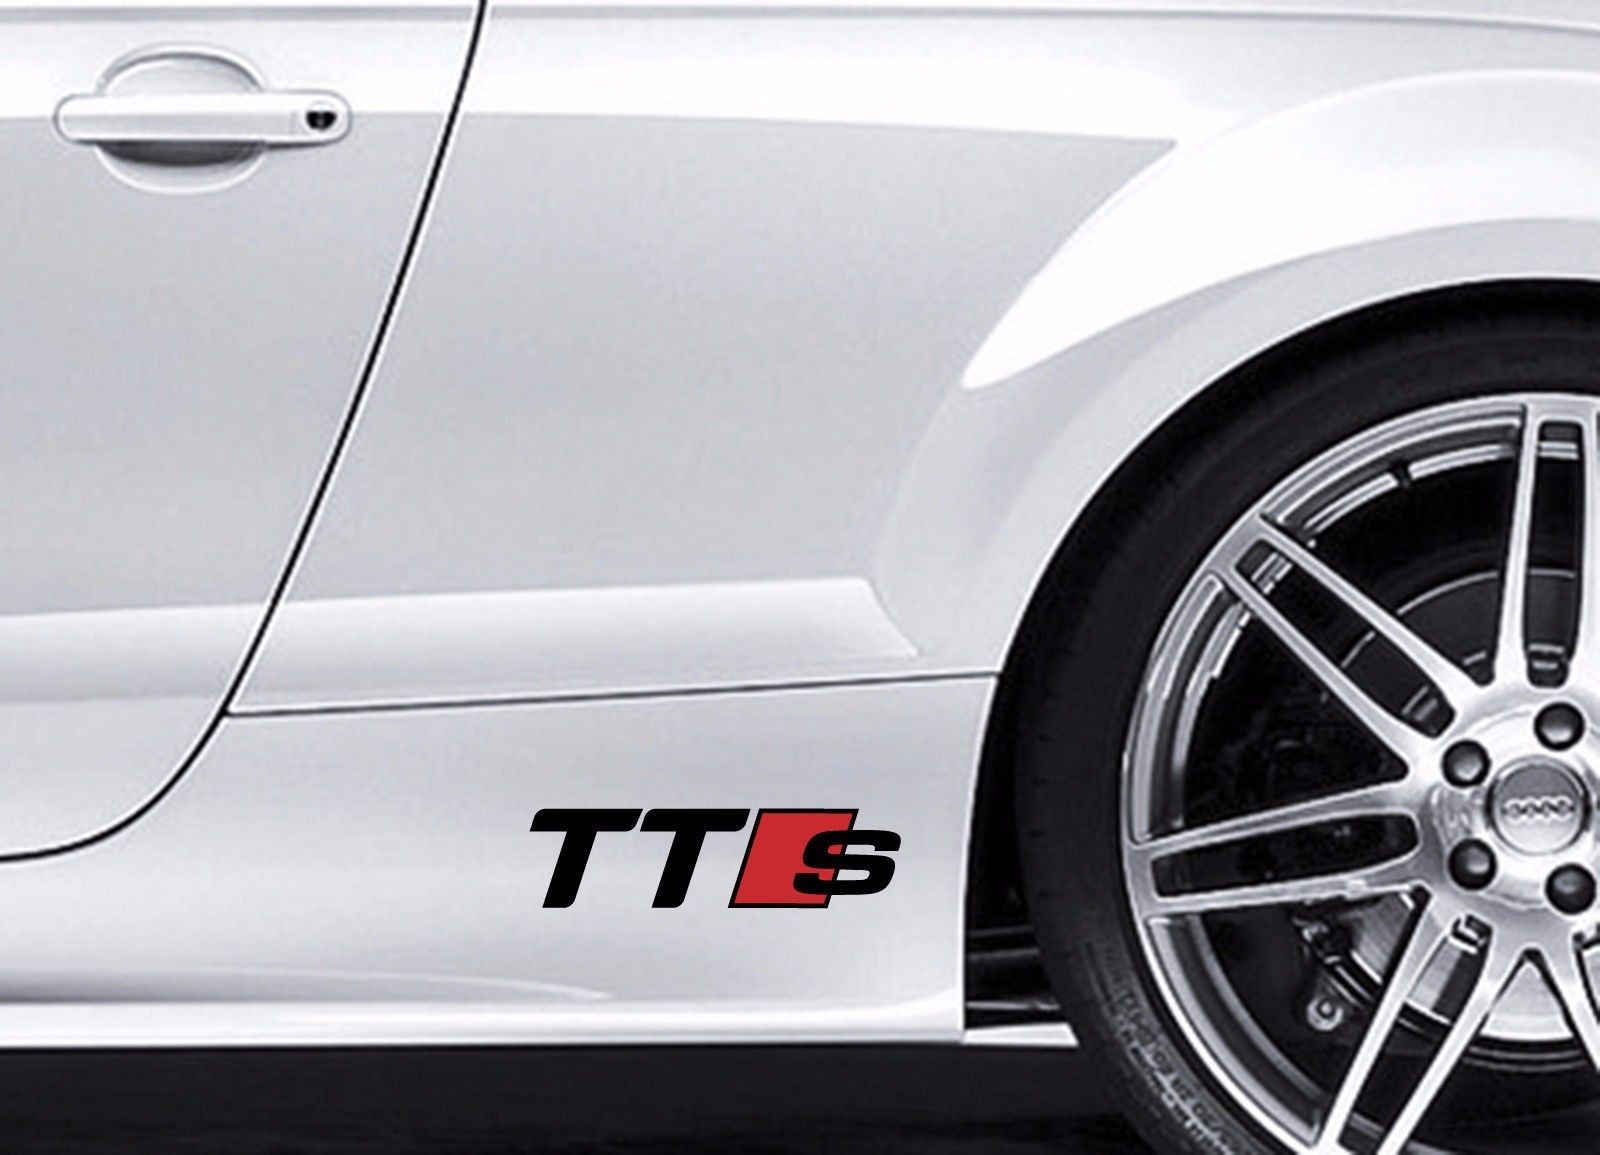 2x Audi TTS in vinile Body Decal Sticker Sport Racing Emblem Logo di qualità premium